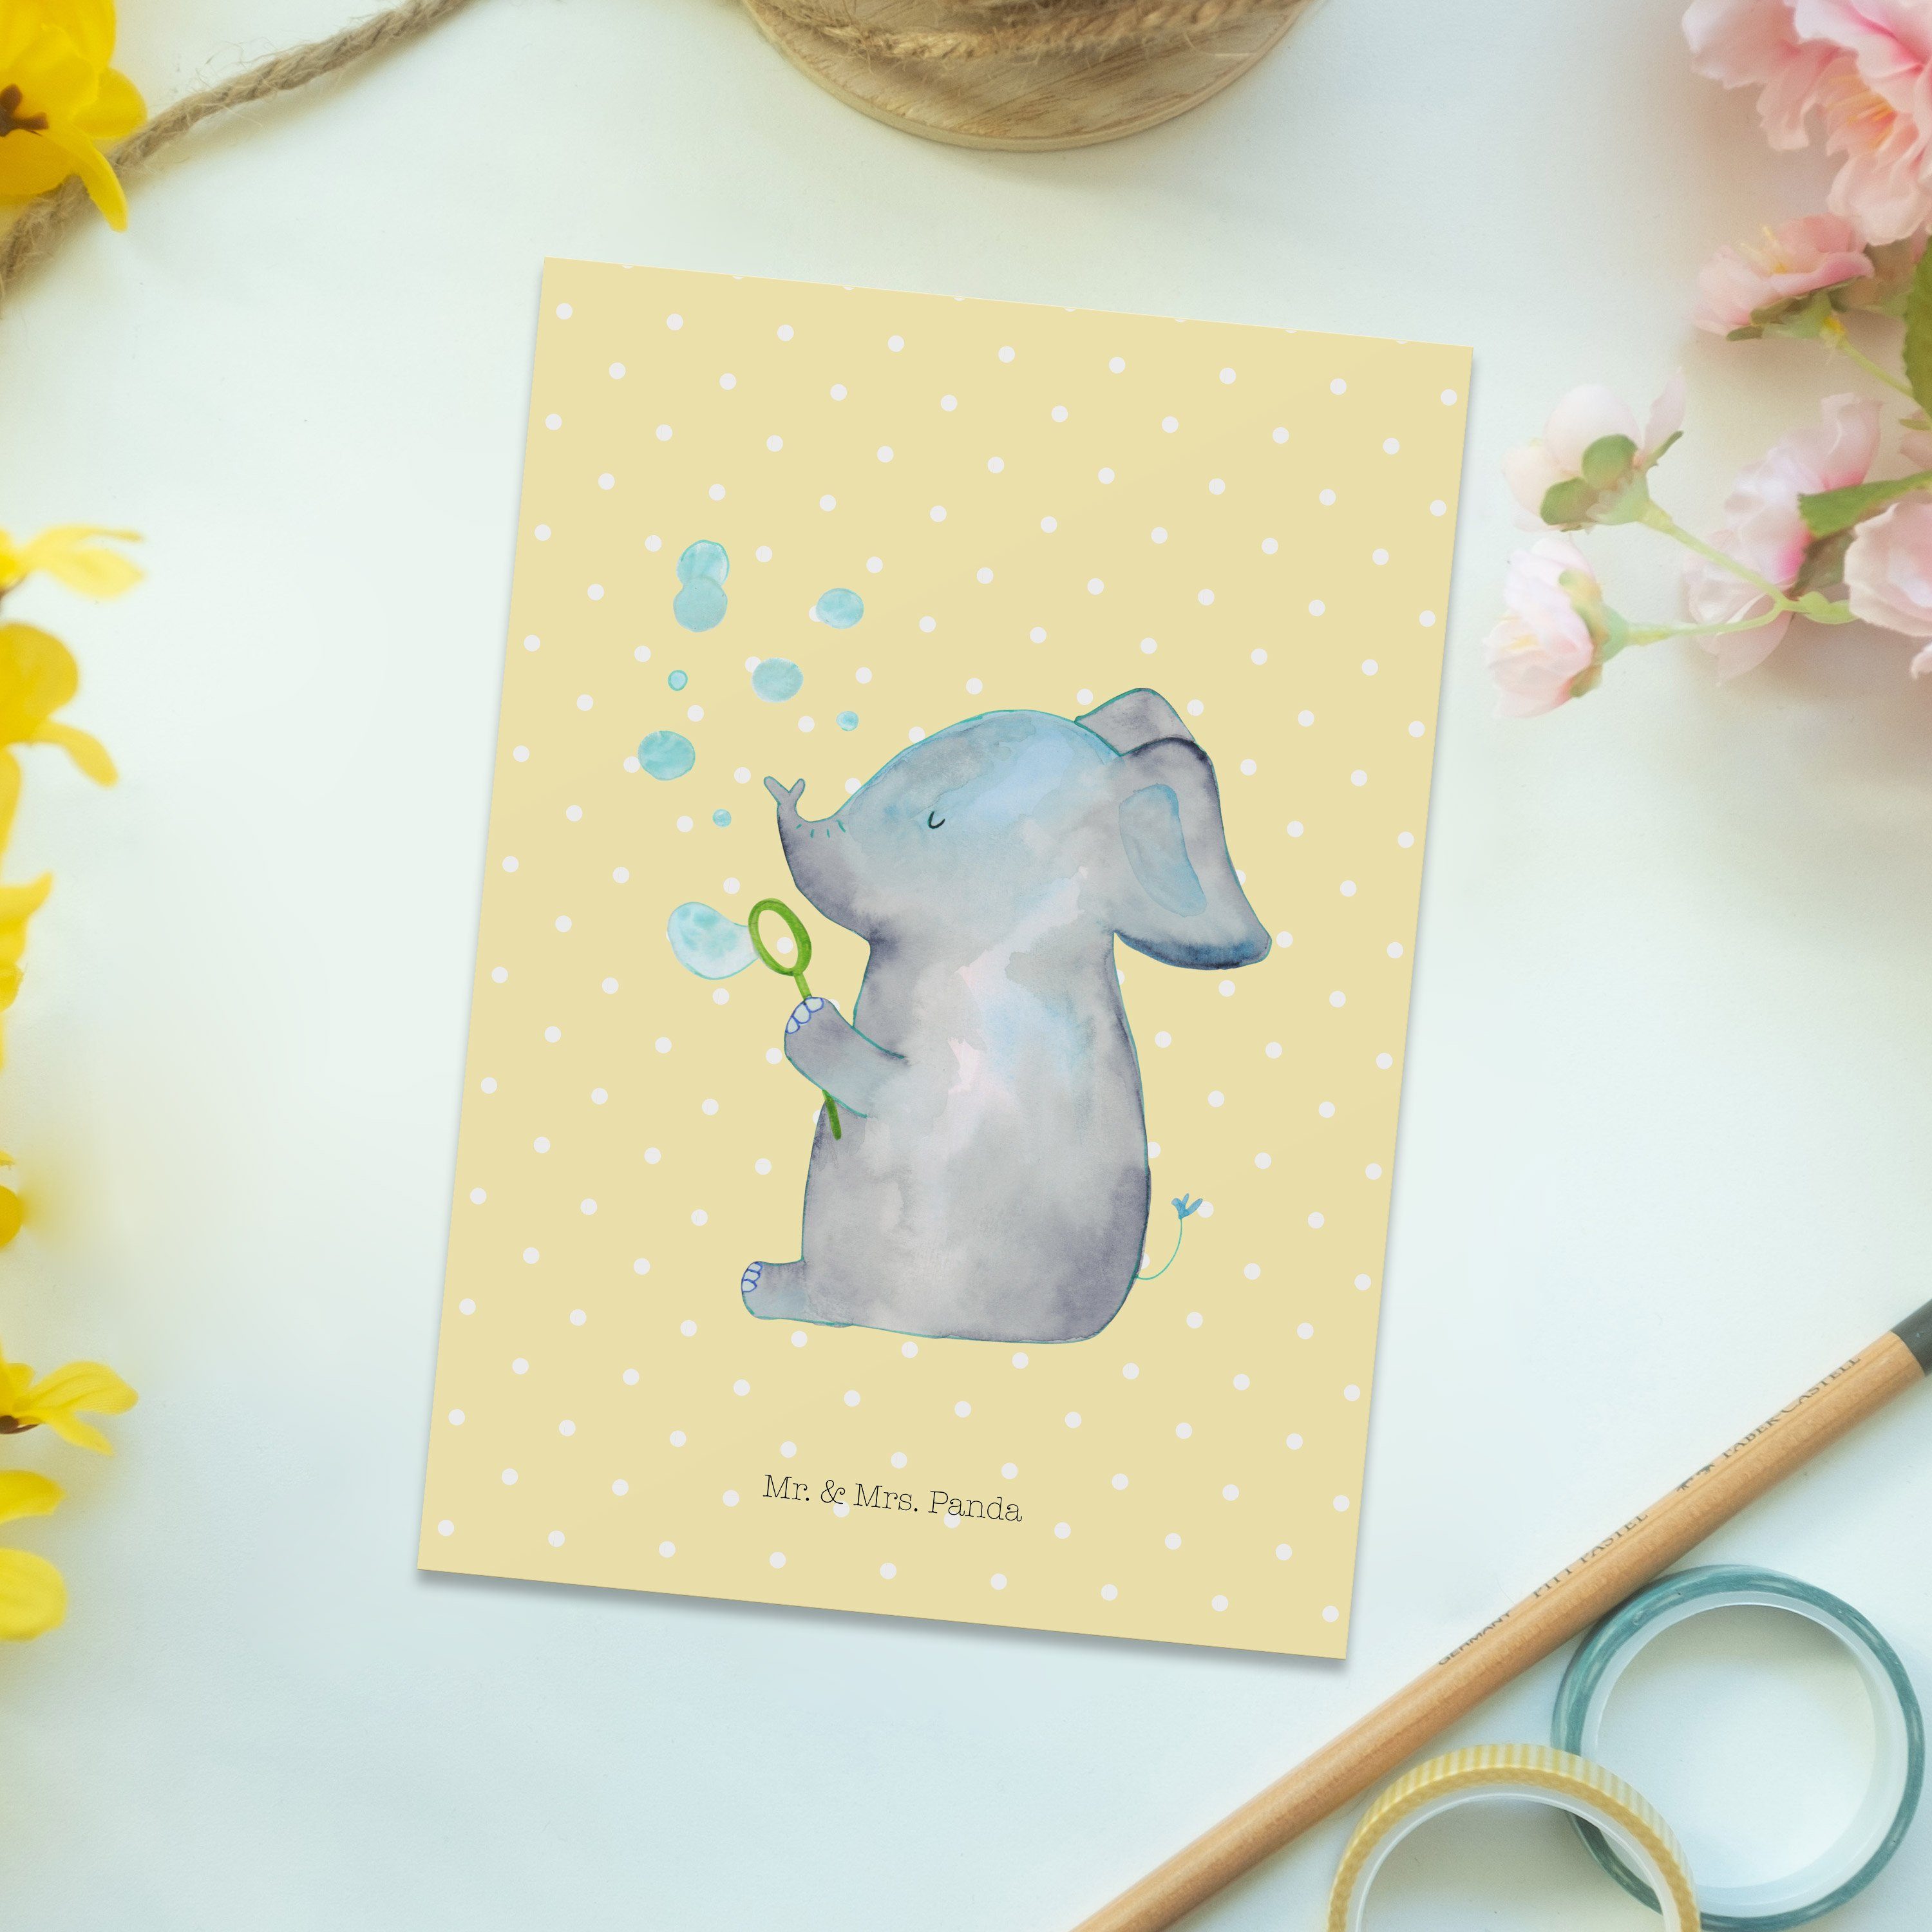 Mr. & Mrs. Panda Gelb Geschenk, Pastell Elefant Seifenblasen Gute Grußkarte - - Postkarte Laune